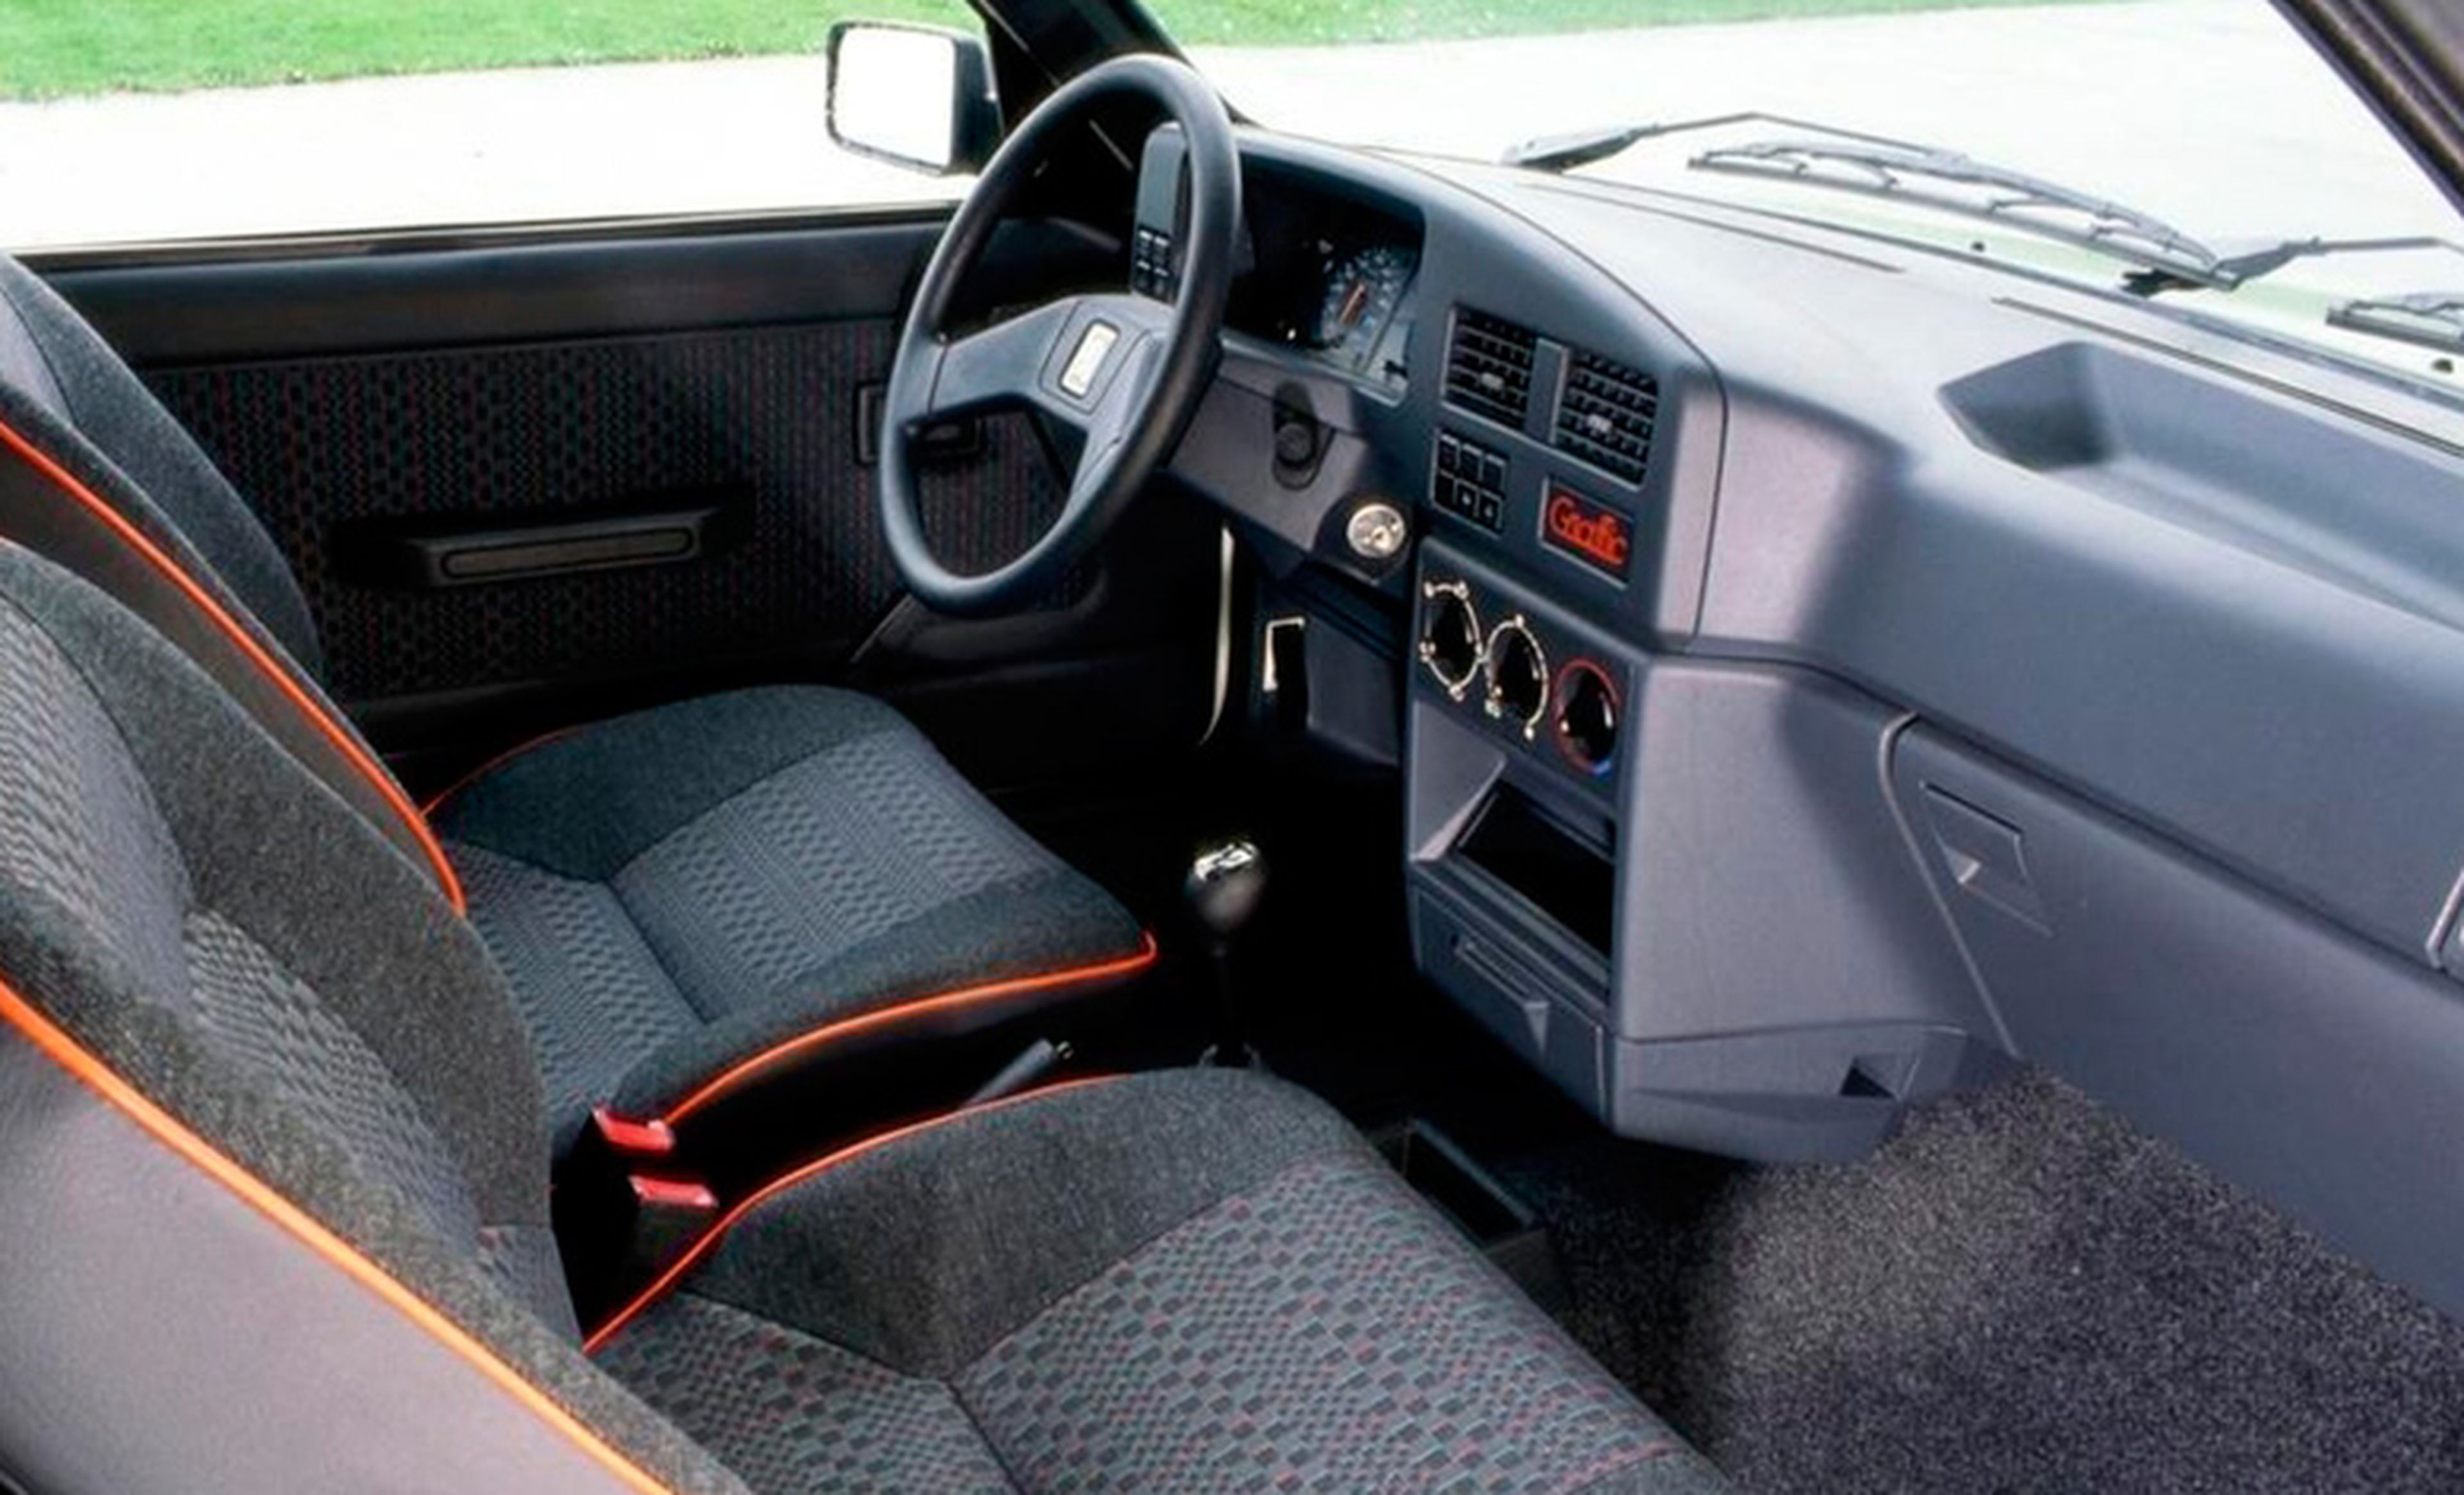 Peugeot 309 GTi (interior)